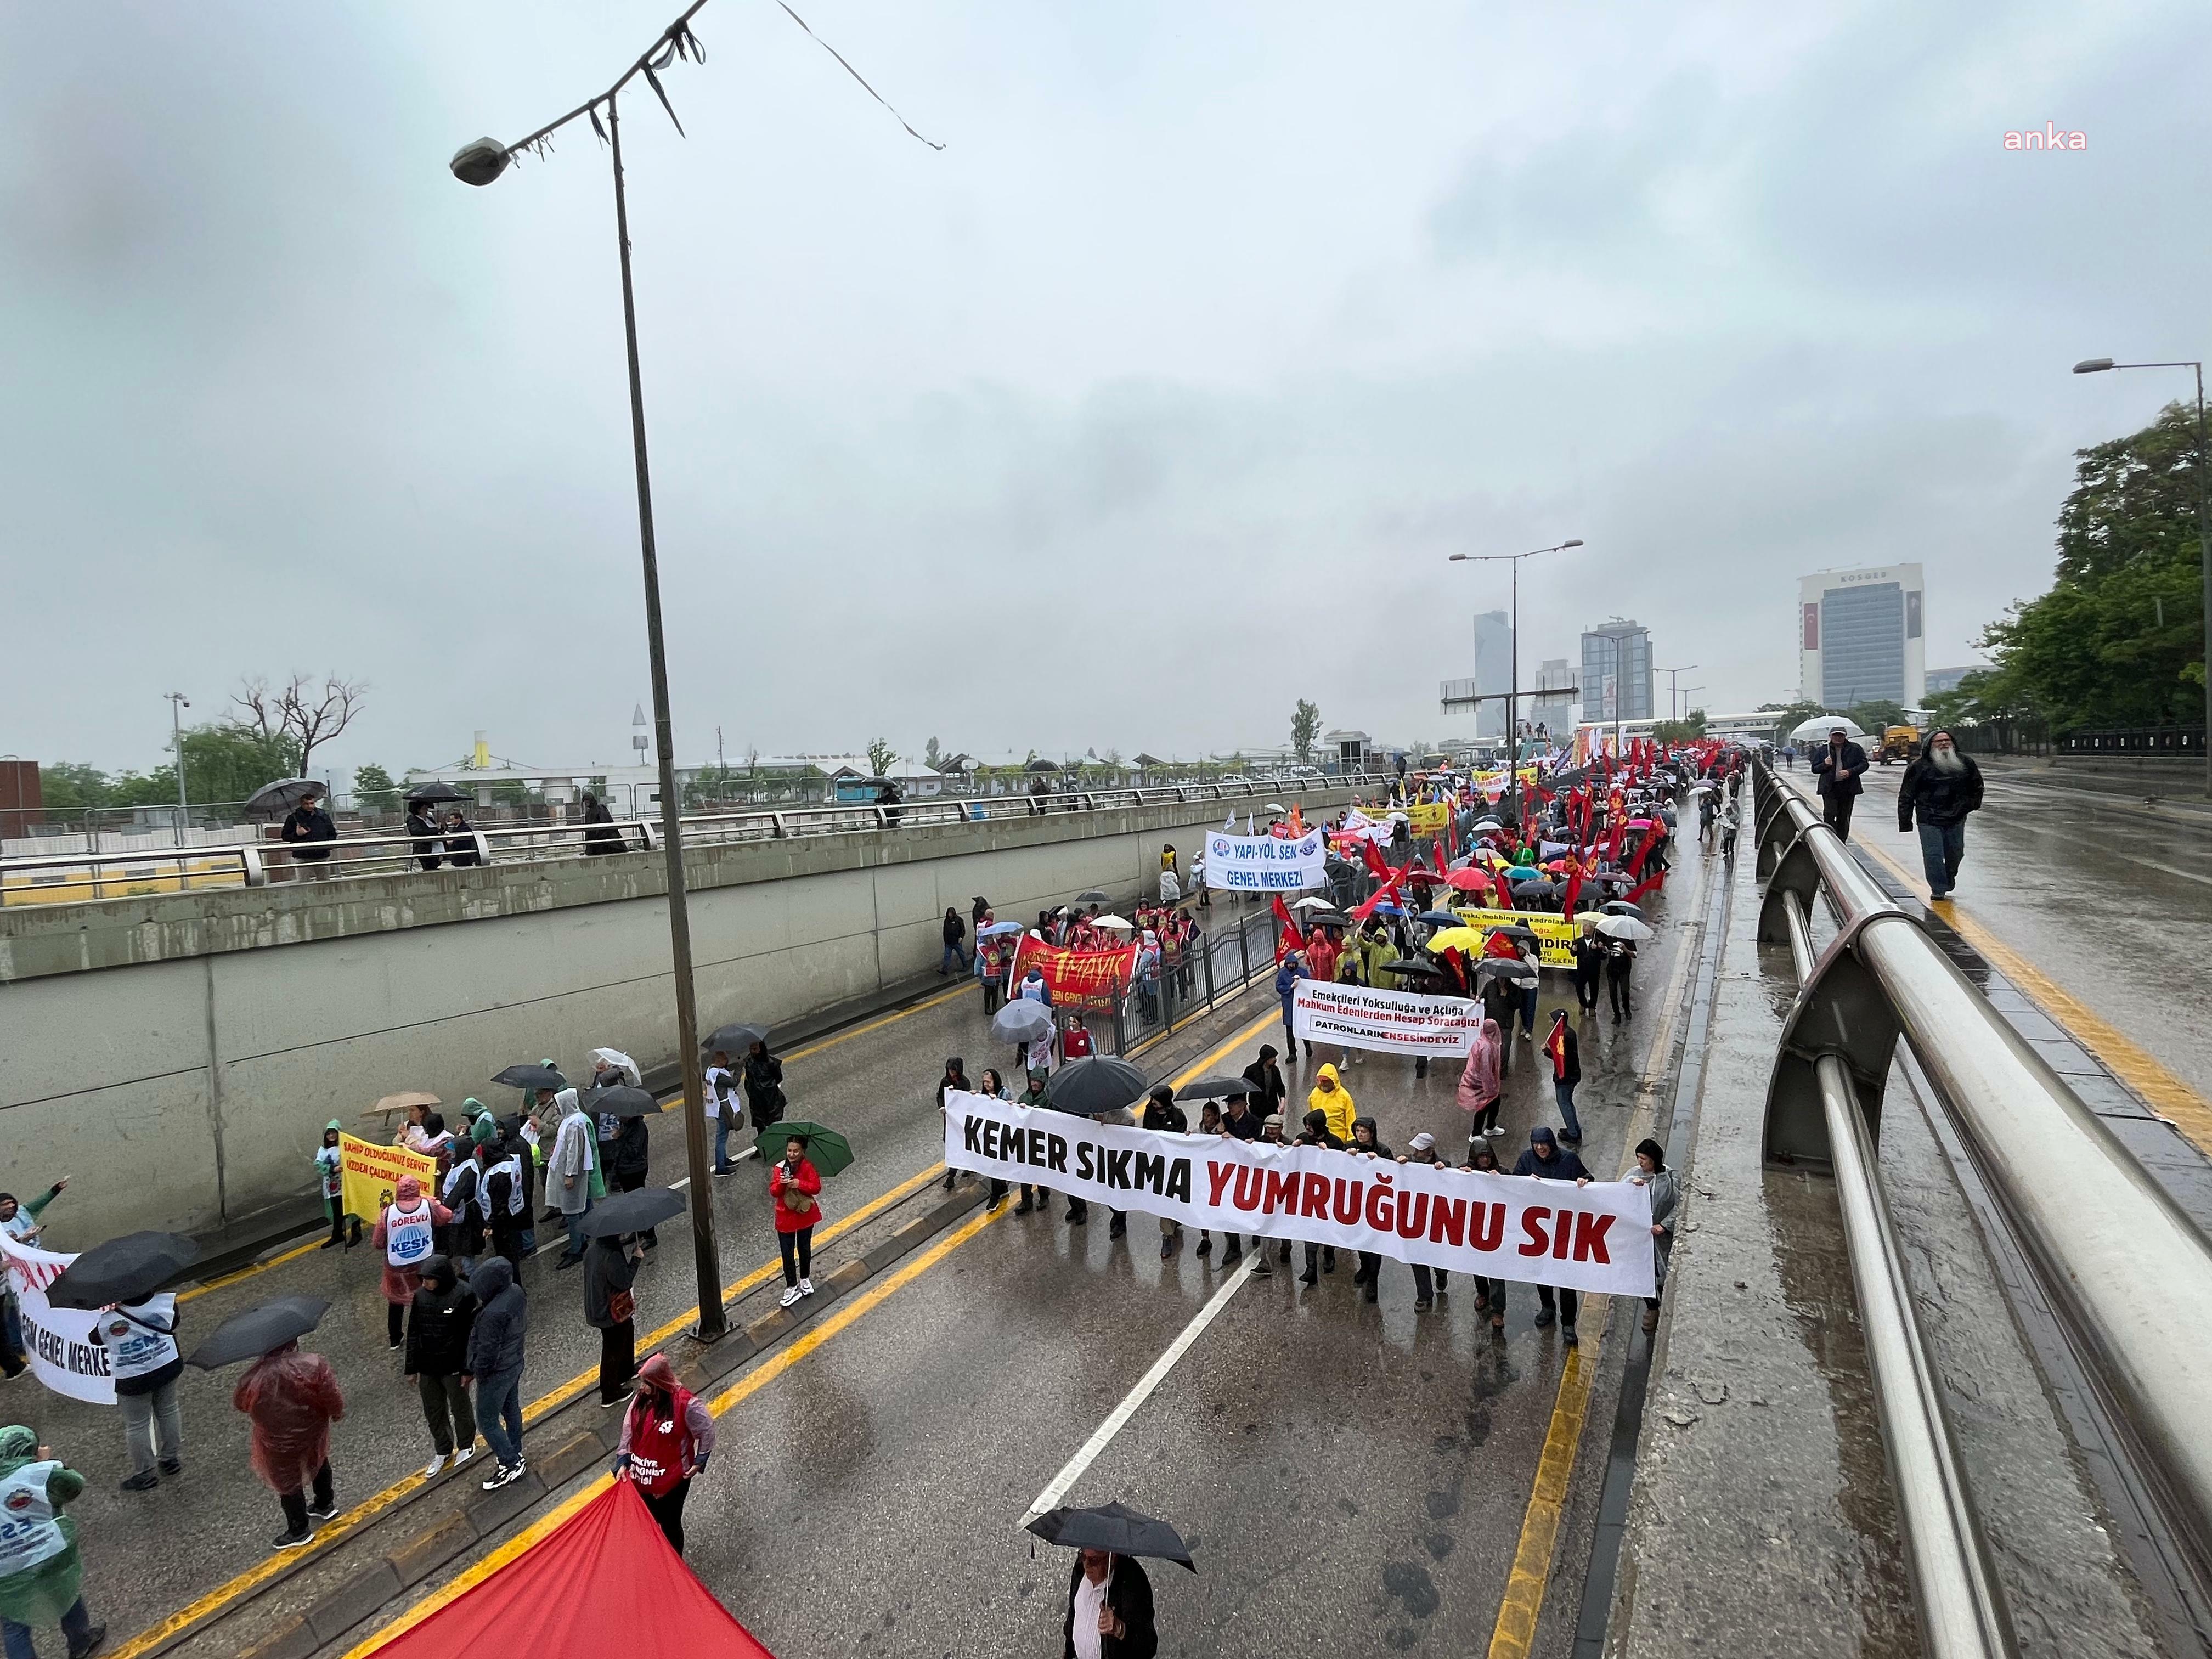 İşçiler Ankara’dan ‘Taksim’ için seslendi: Her yer Taksim her ter direniş